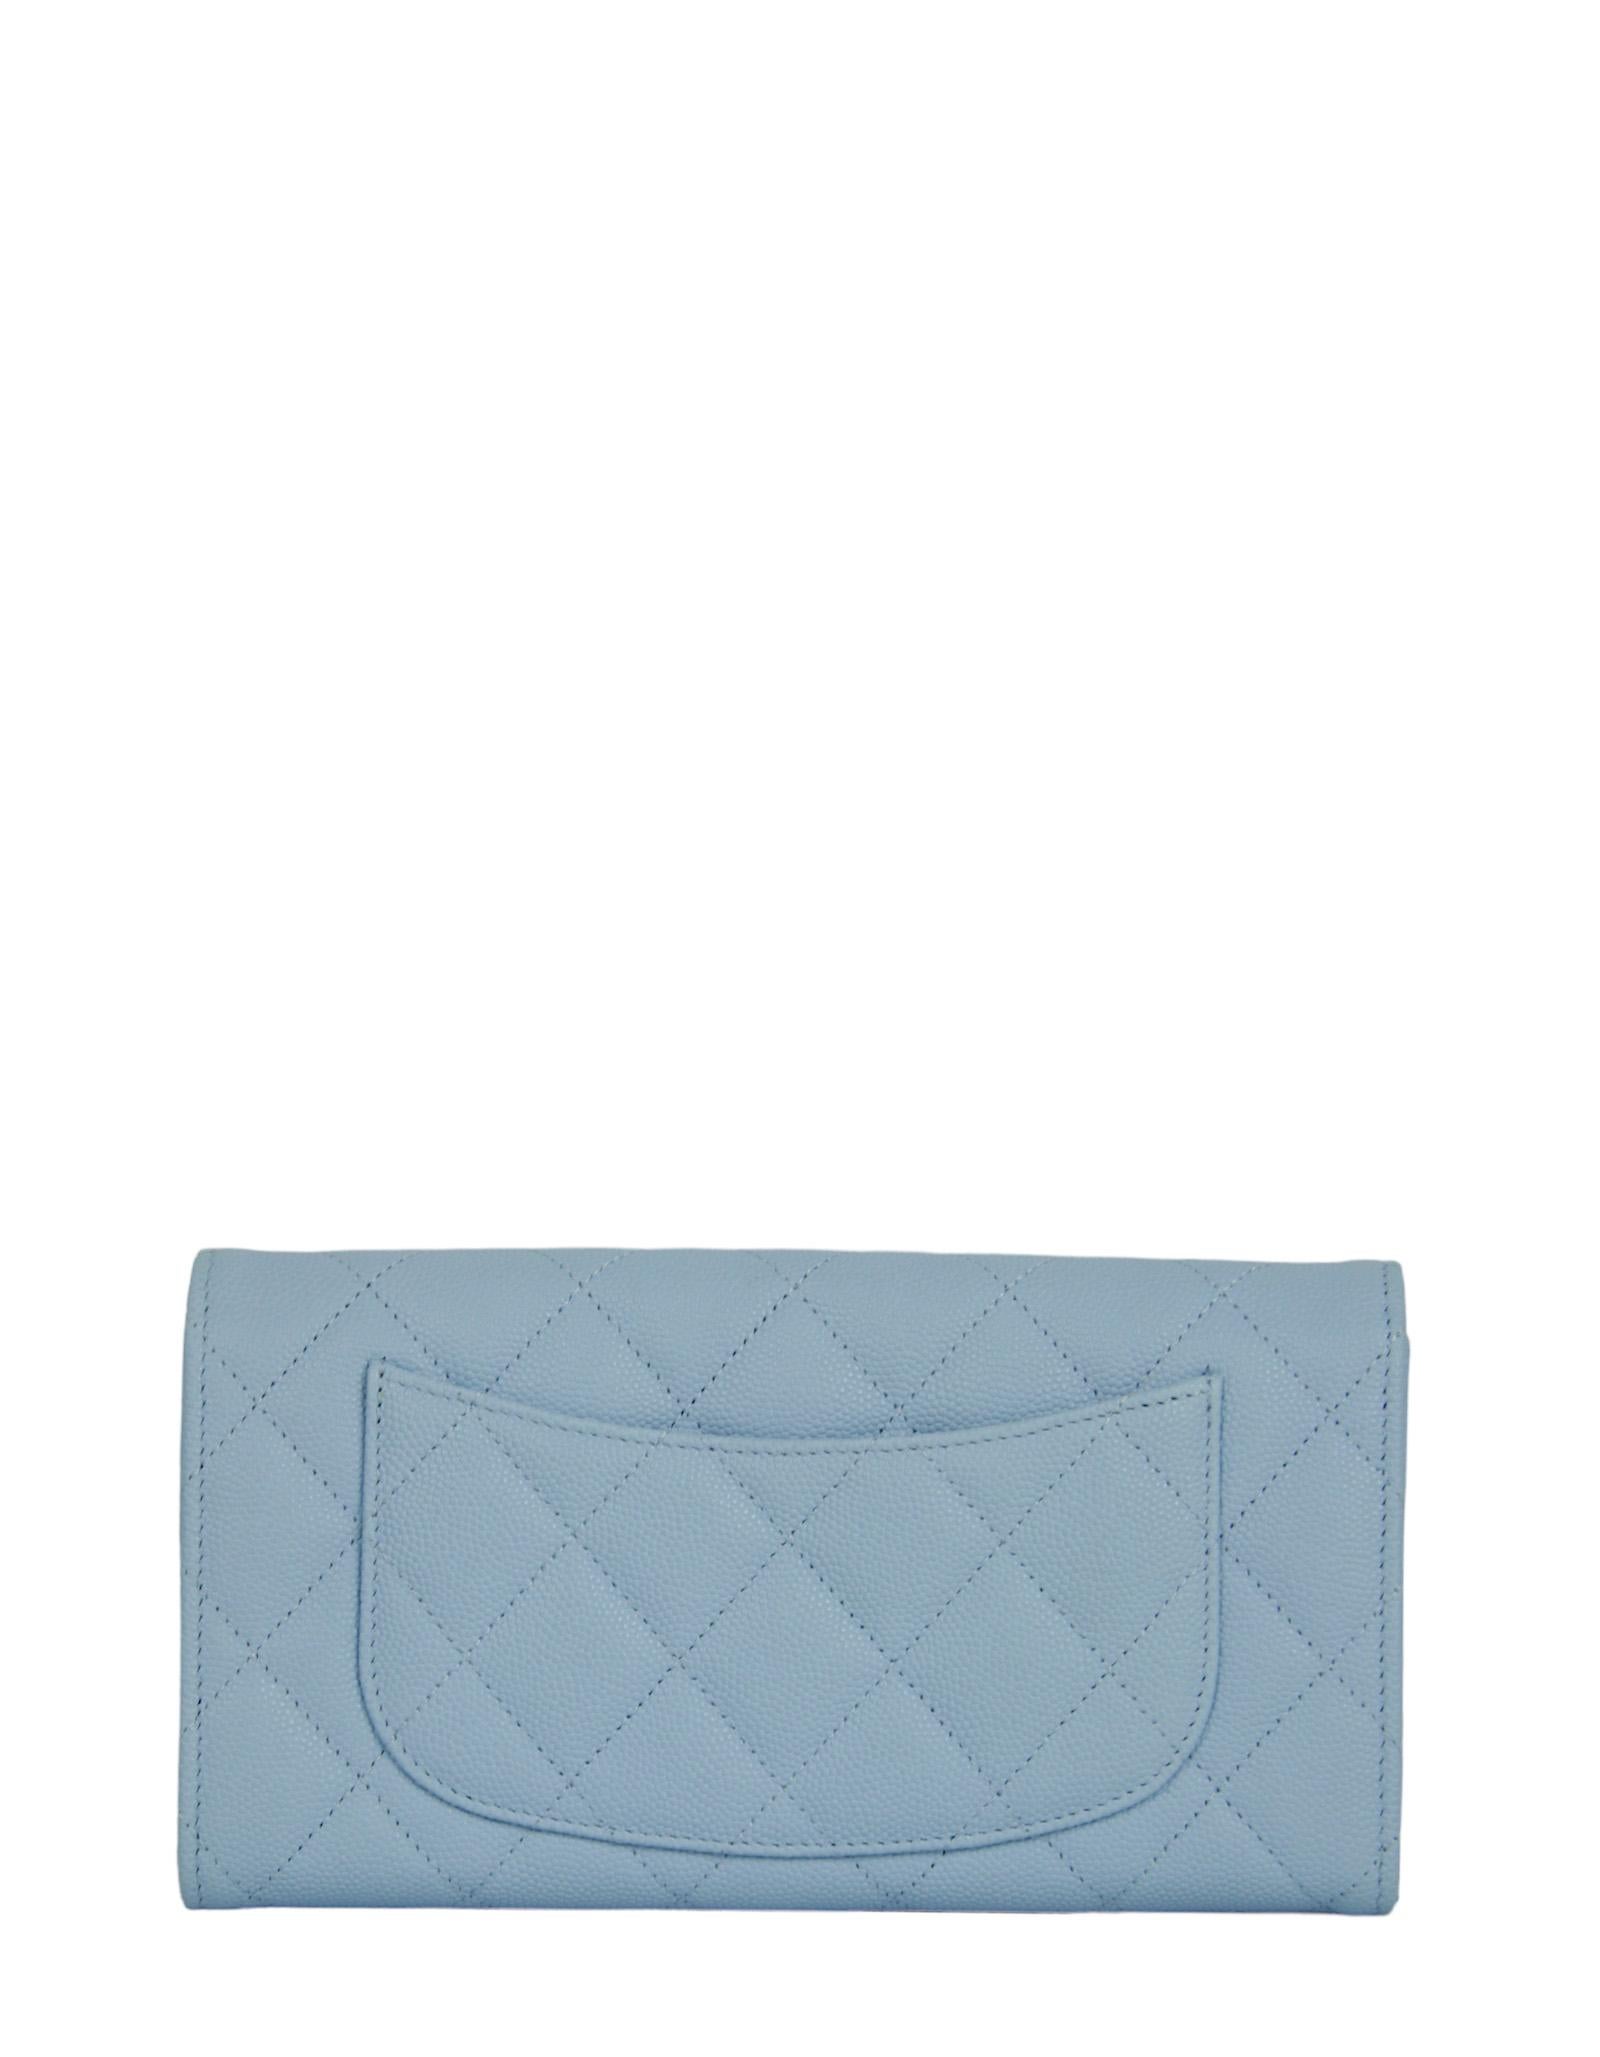 chanel blue wallet